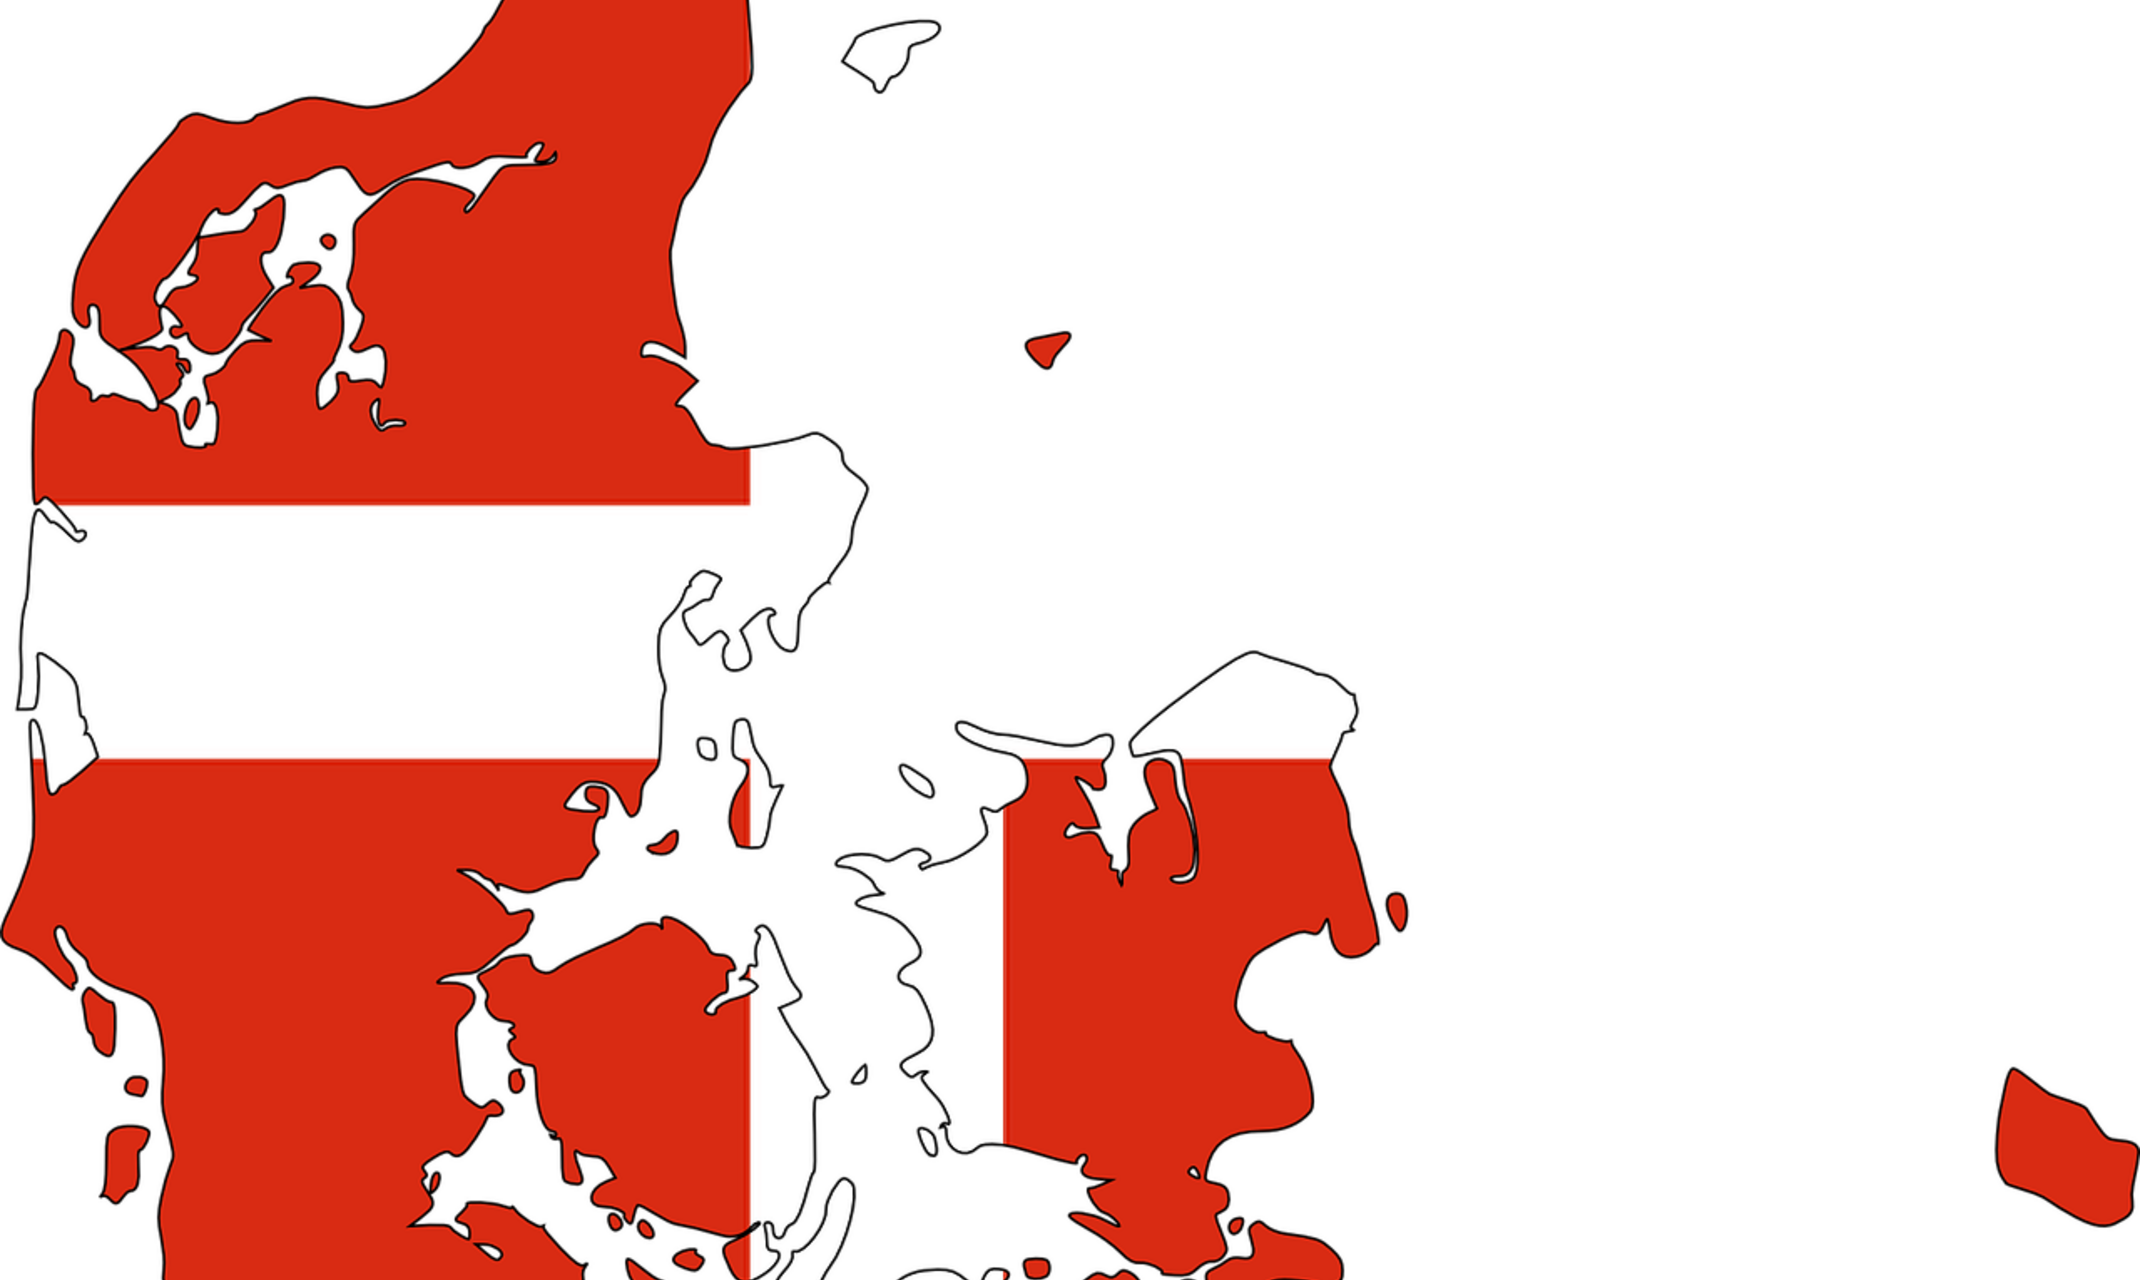 Zeichnung der Umrisse Dänemarks mit den Farben der dänischen Nationalflagge